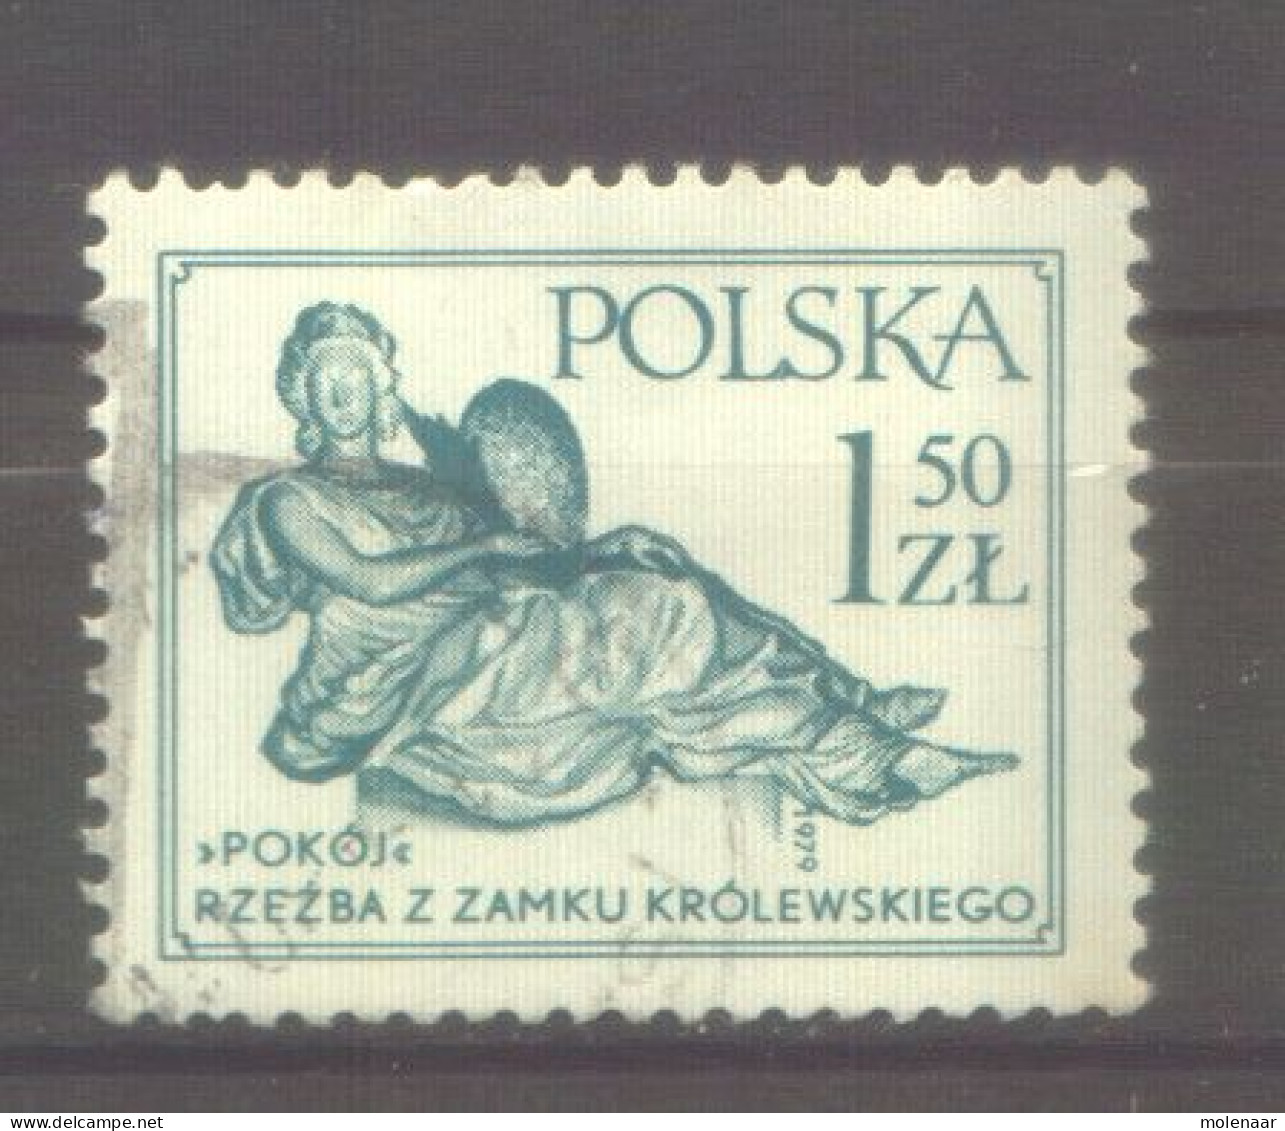 Postzegels > Europa > Polen > 1944-.... Republiek > 1971-80 > Gebruikt No. 2625  (12165) - Oblitérés